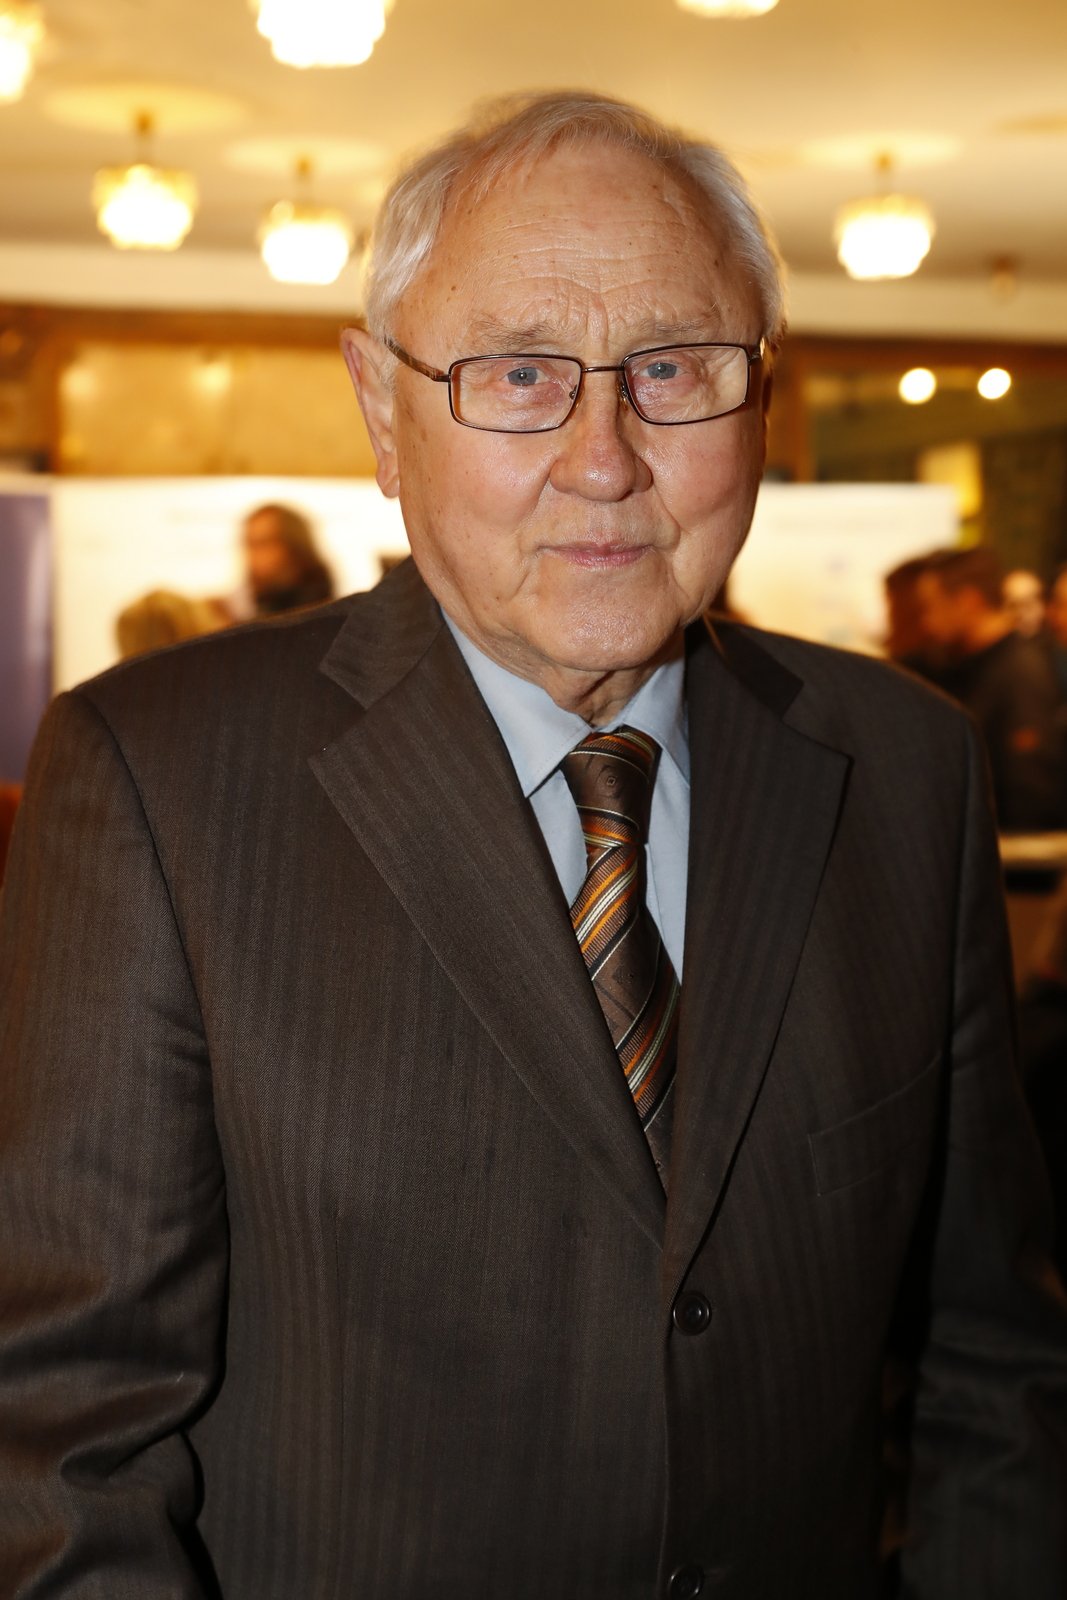 Jaroslav Satoranský